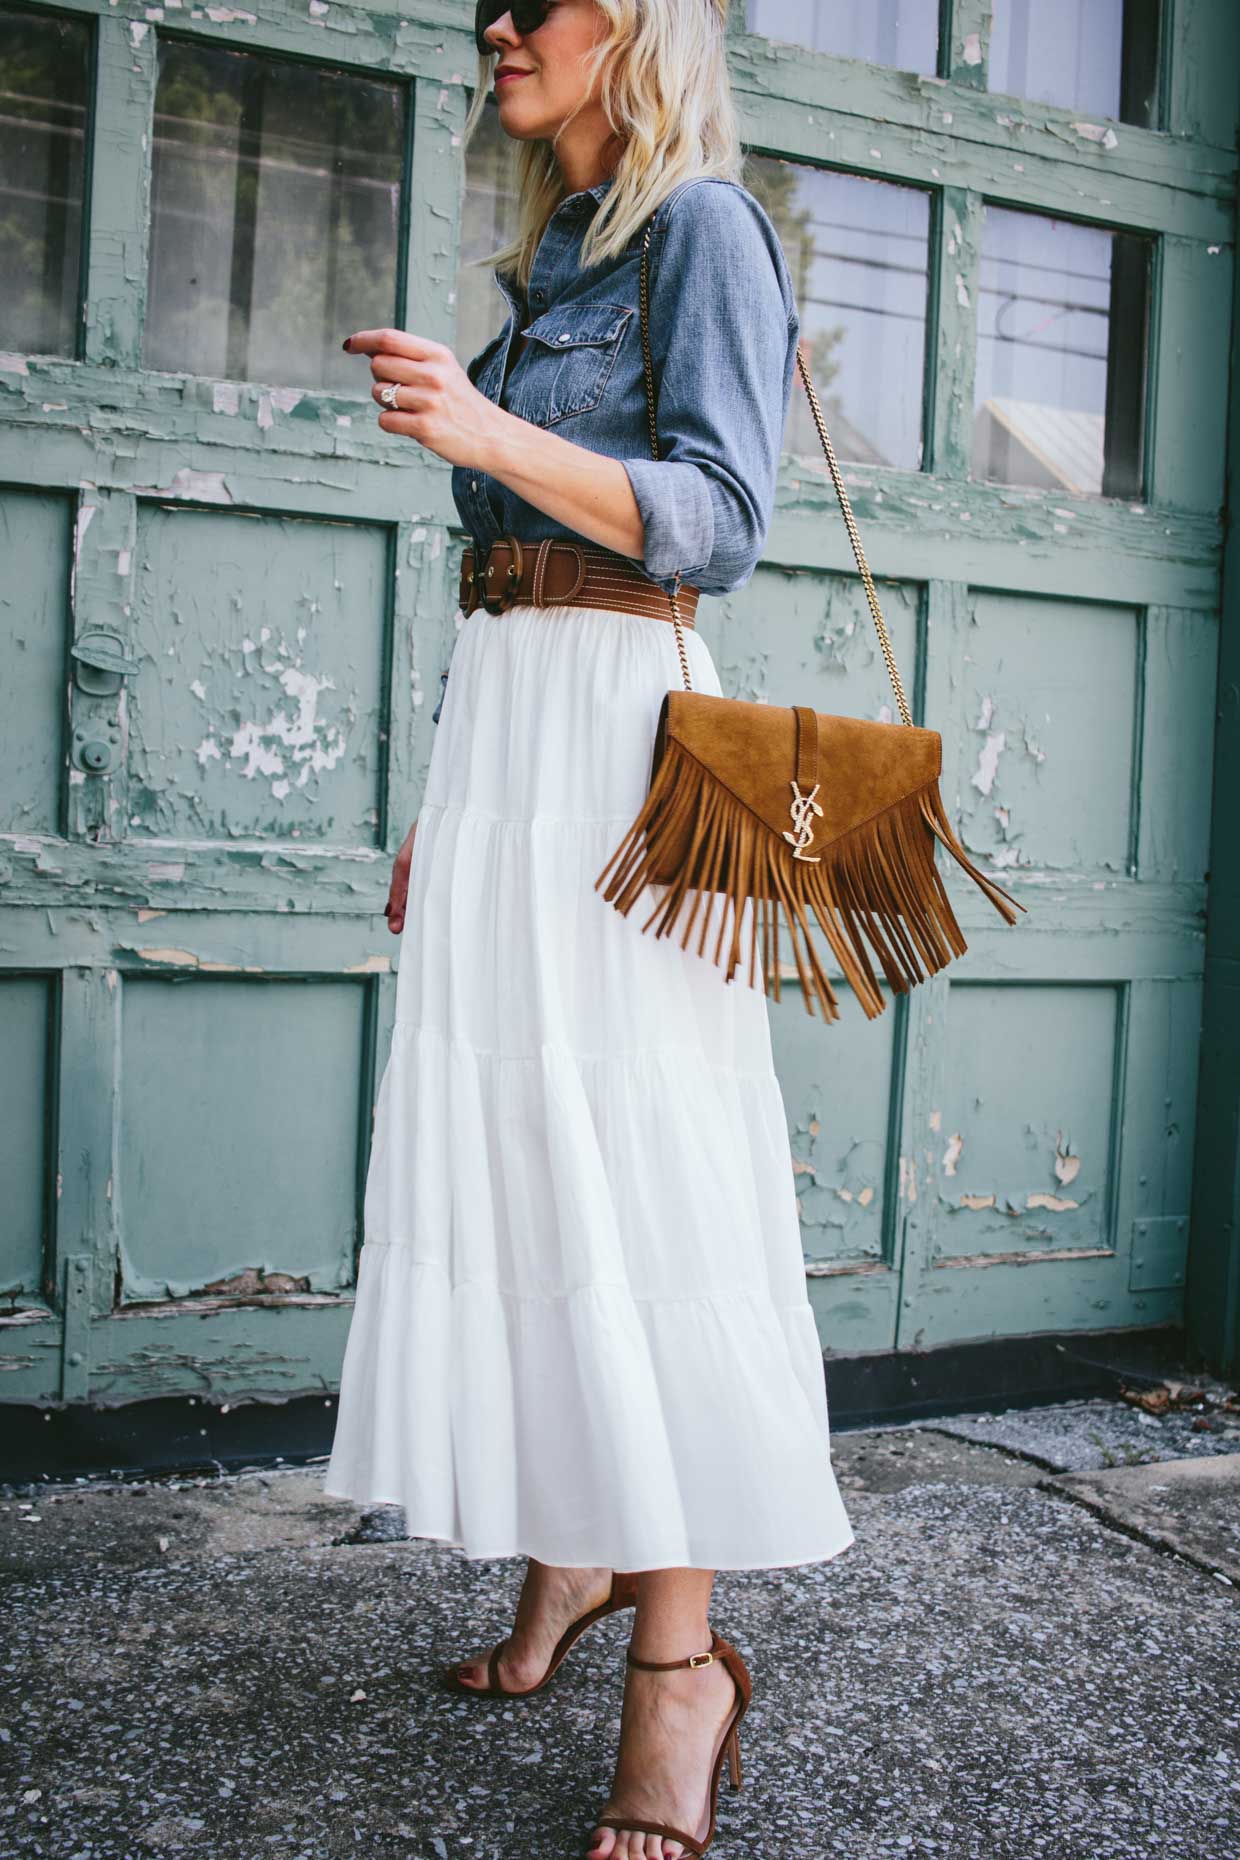 Western Denim Shirt & White Peasant Skirt - Meagan's Moda